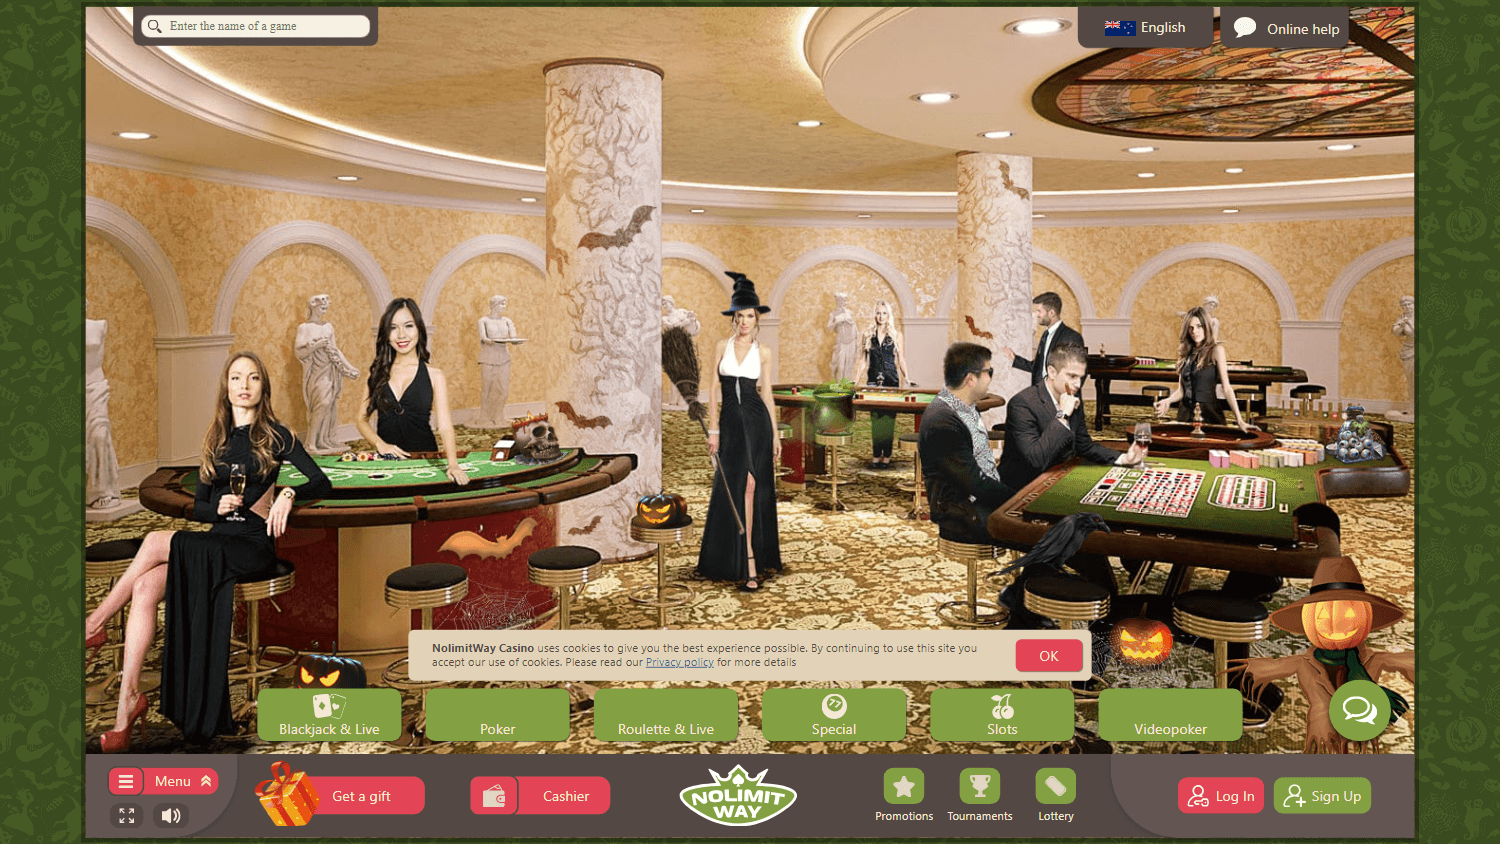 nolimitway_casino_game_gallery_desktop